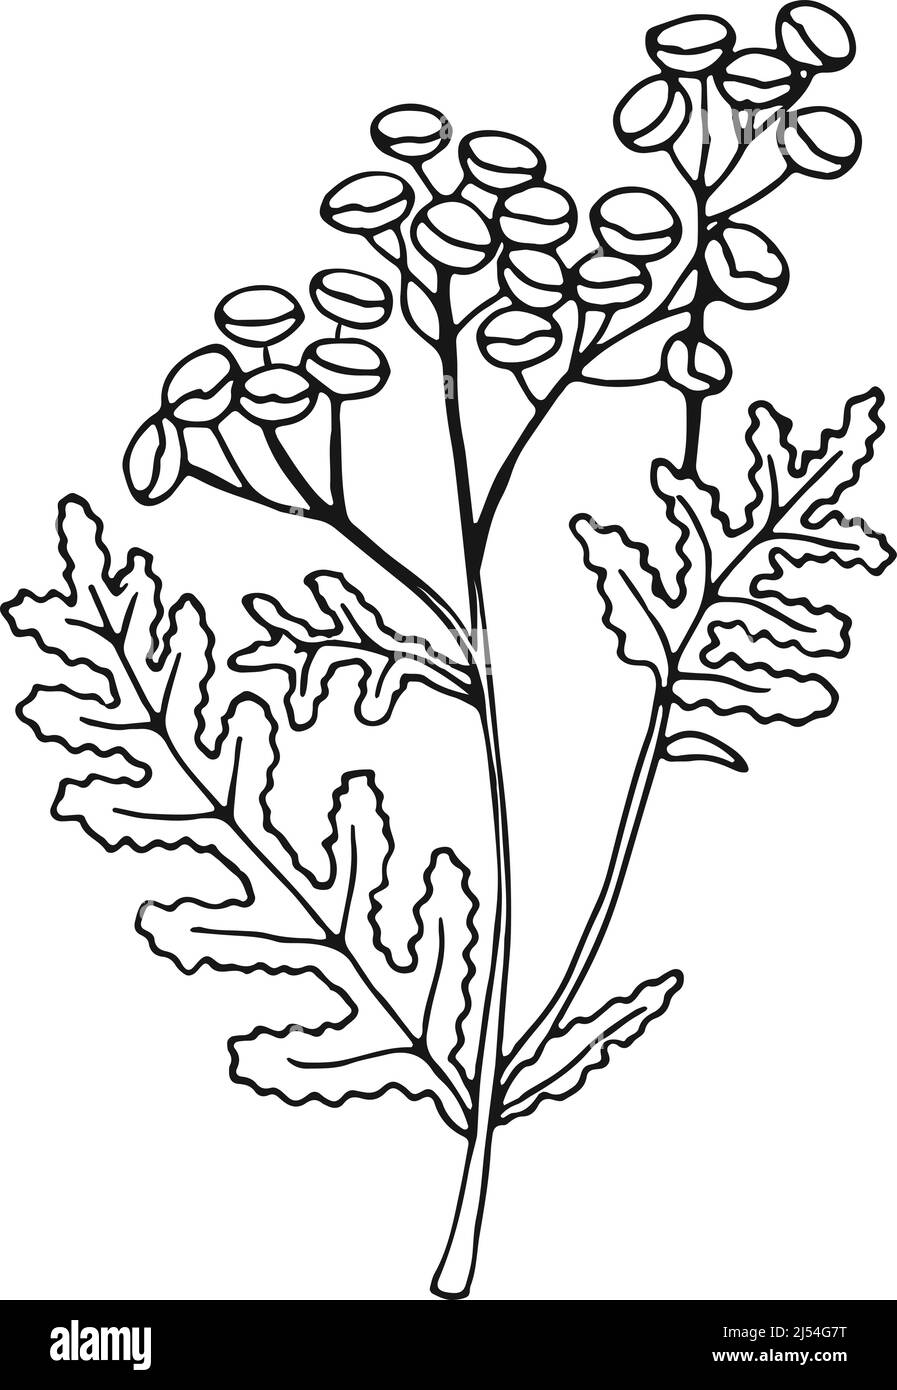 Usine de tansy commune. Boutons dorés fleur illustration botanique Illustration de Vecteur